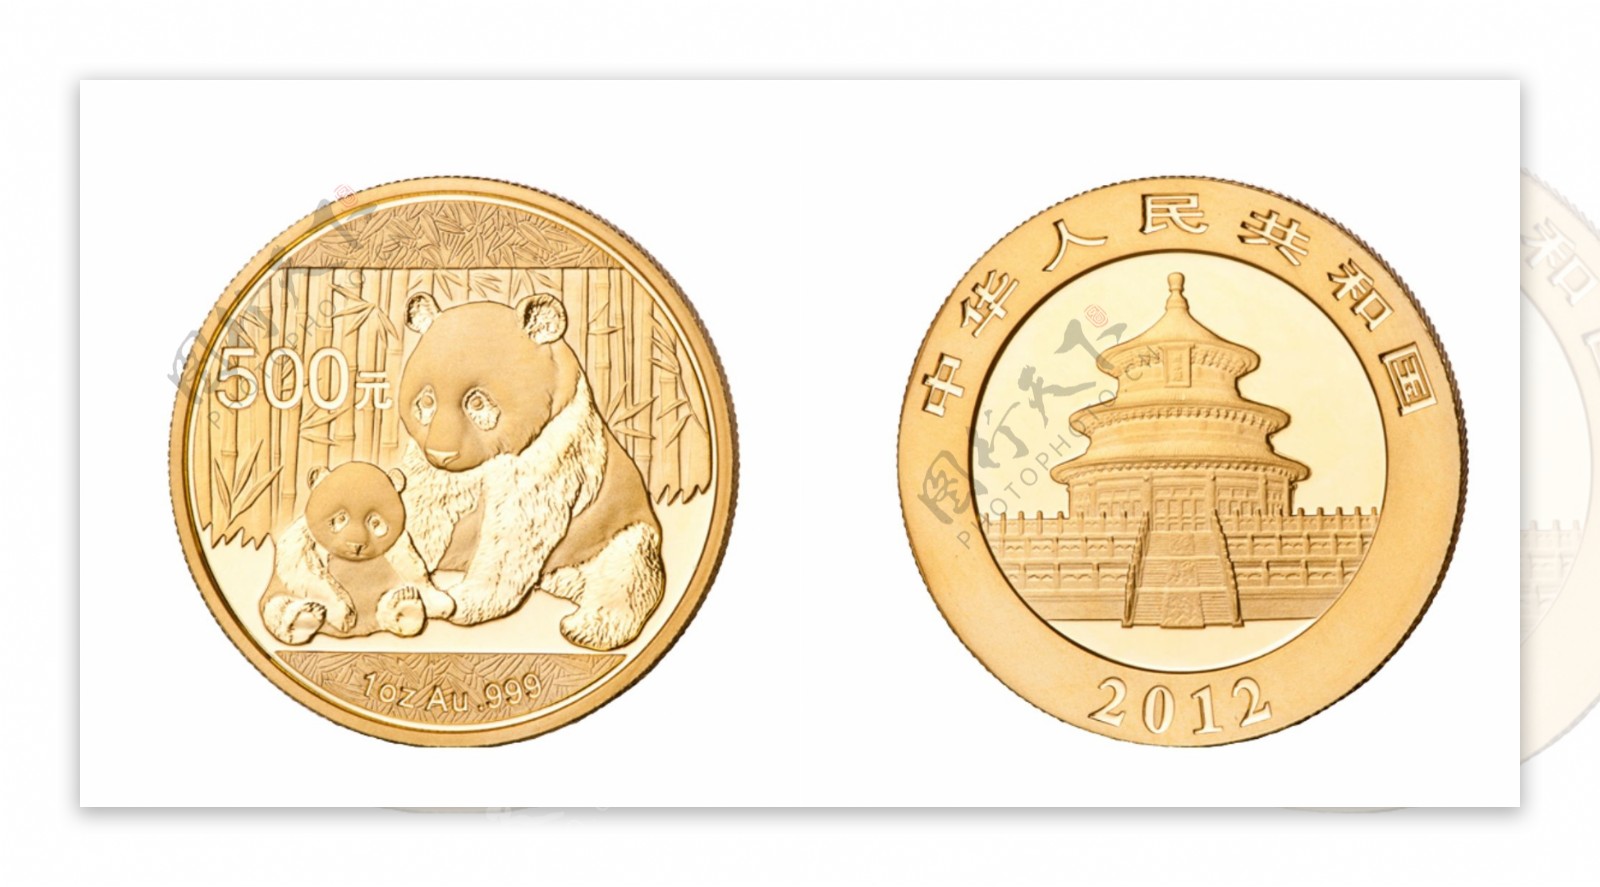 熊猫纪念金币